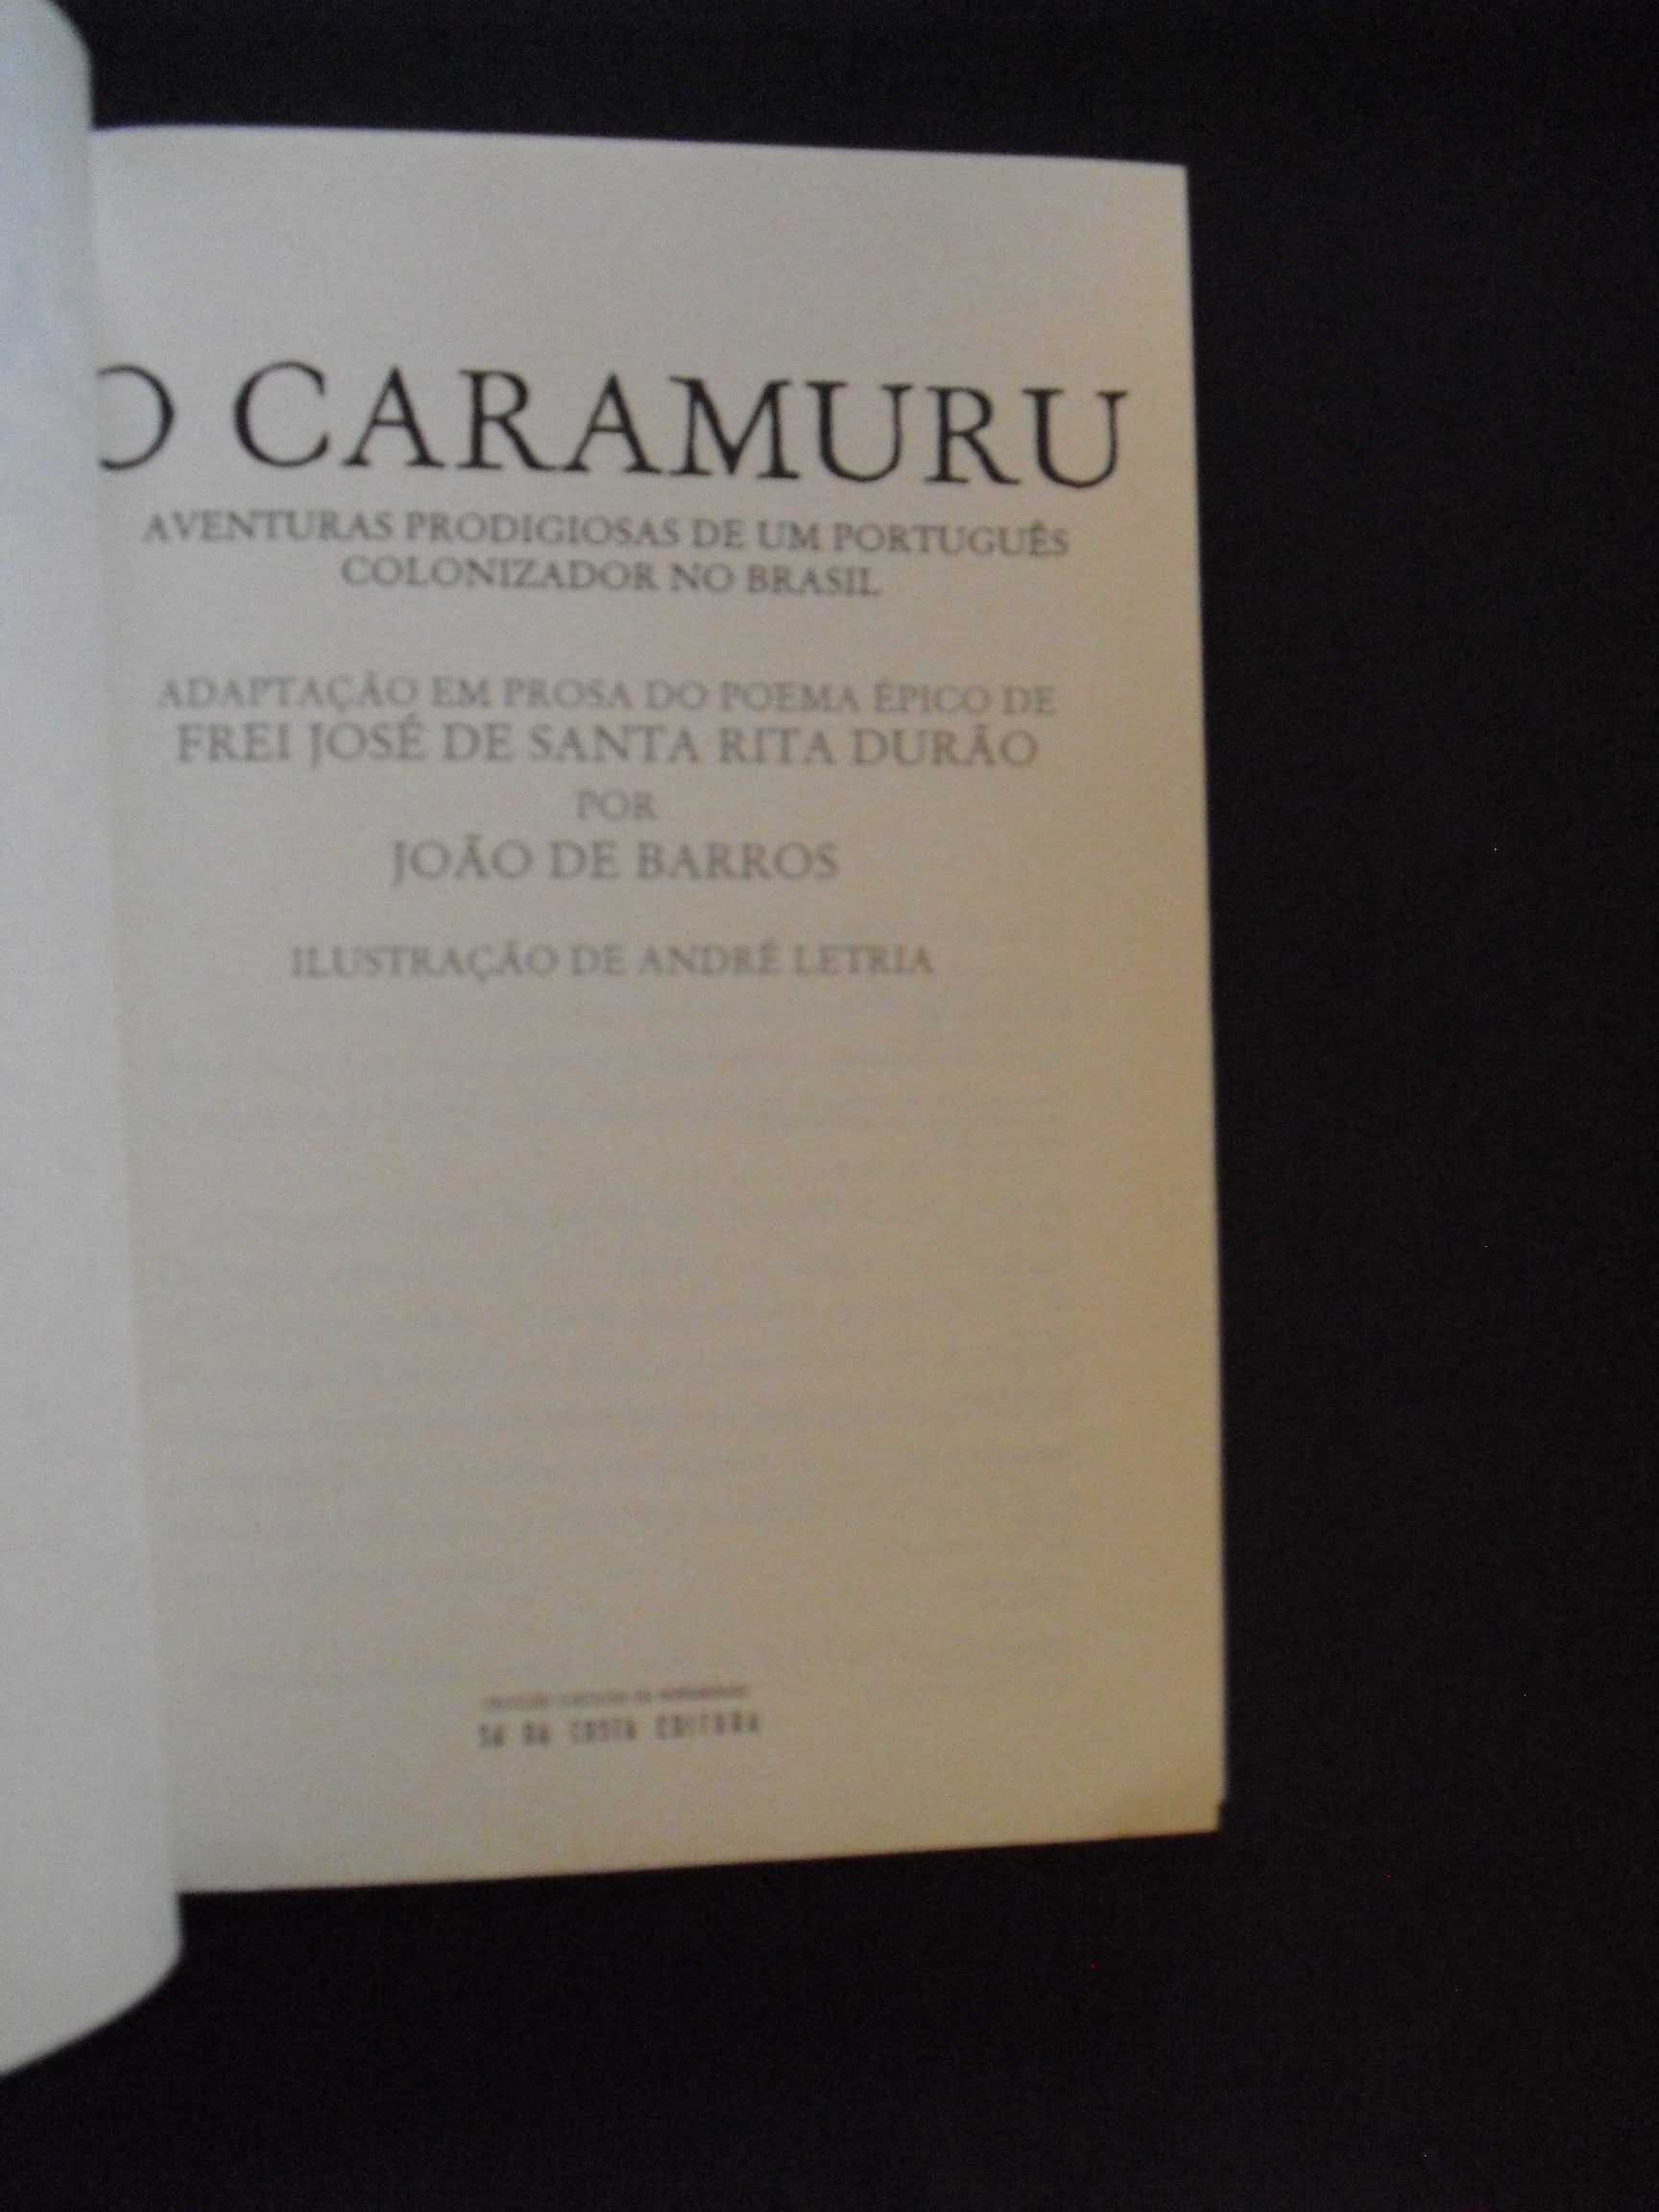 Barros (João de,Adaptação em Prosa);Poema épico de Santa Rita Durão